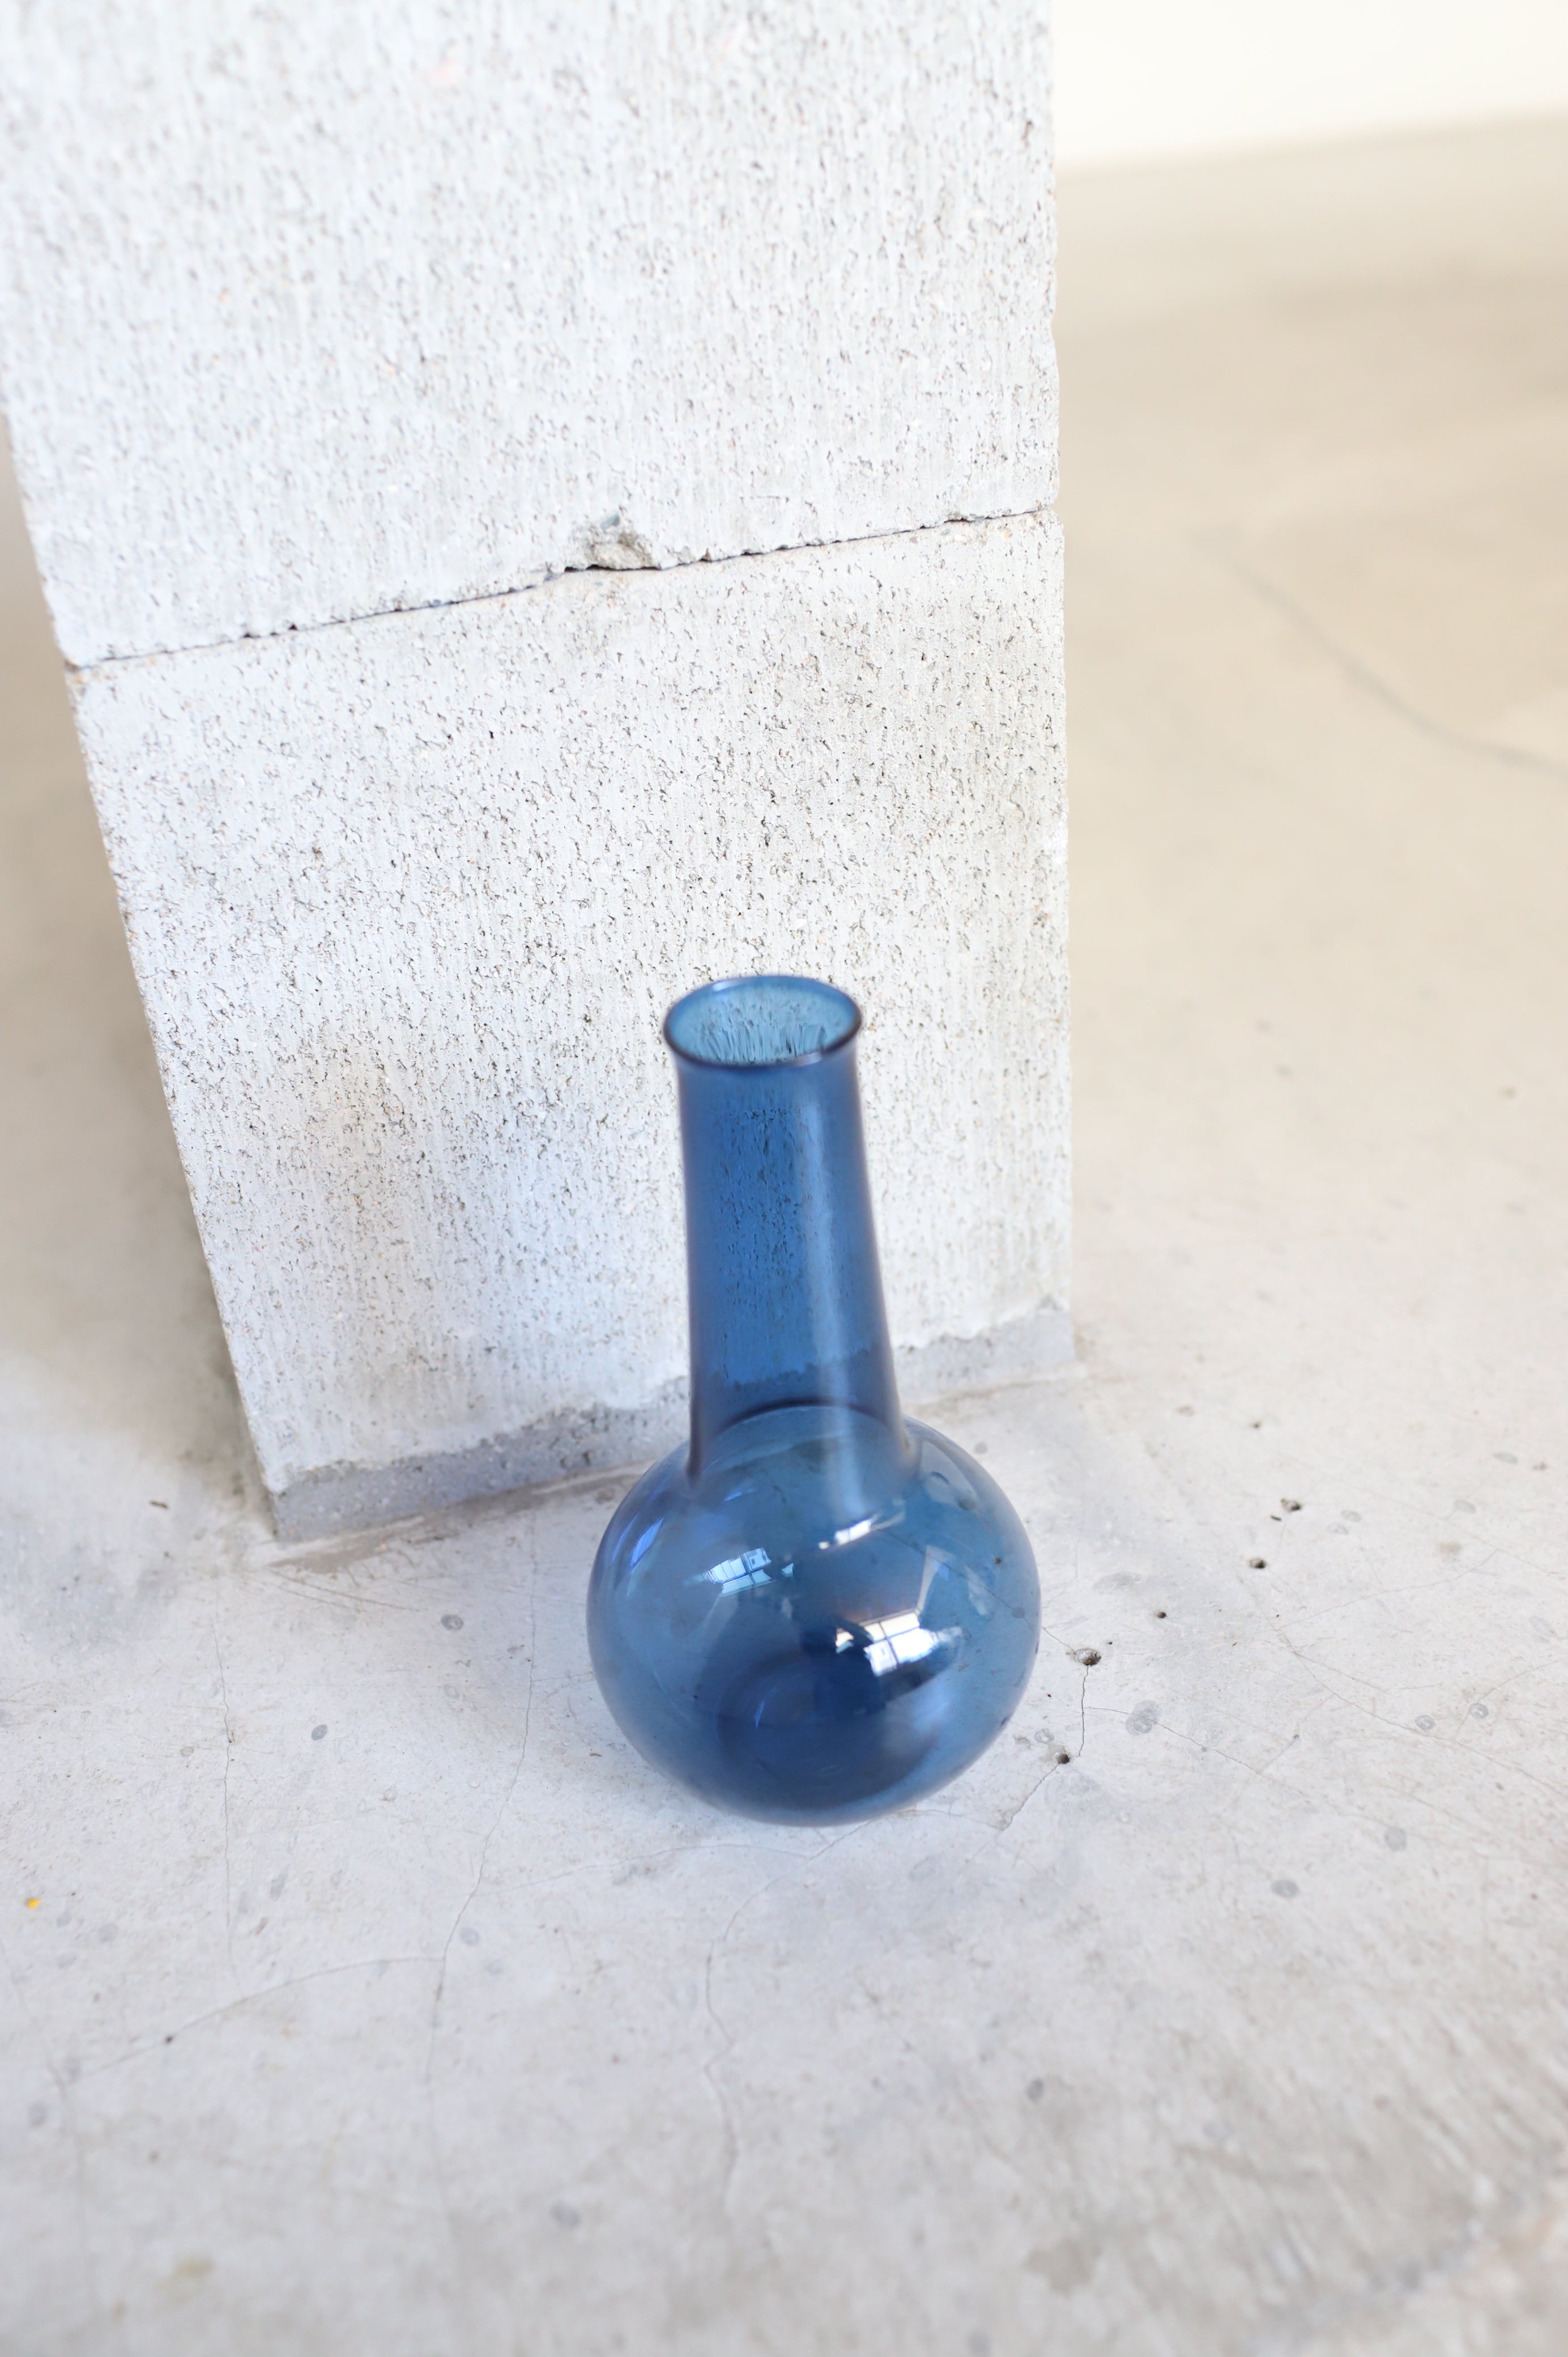 September Vase #15